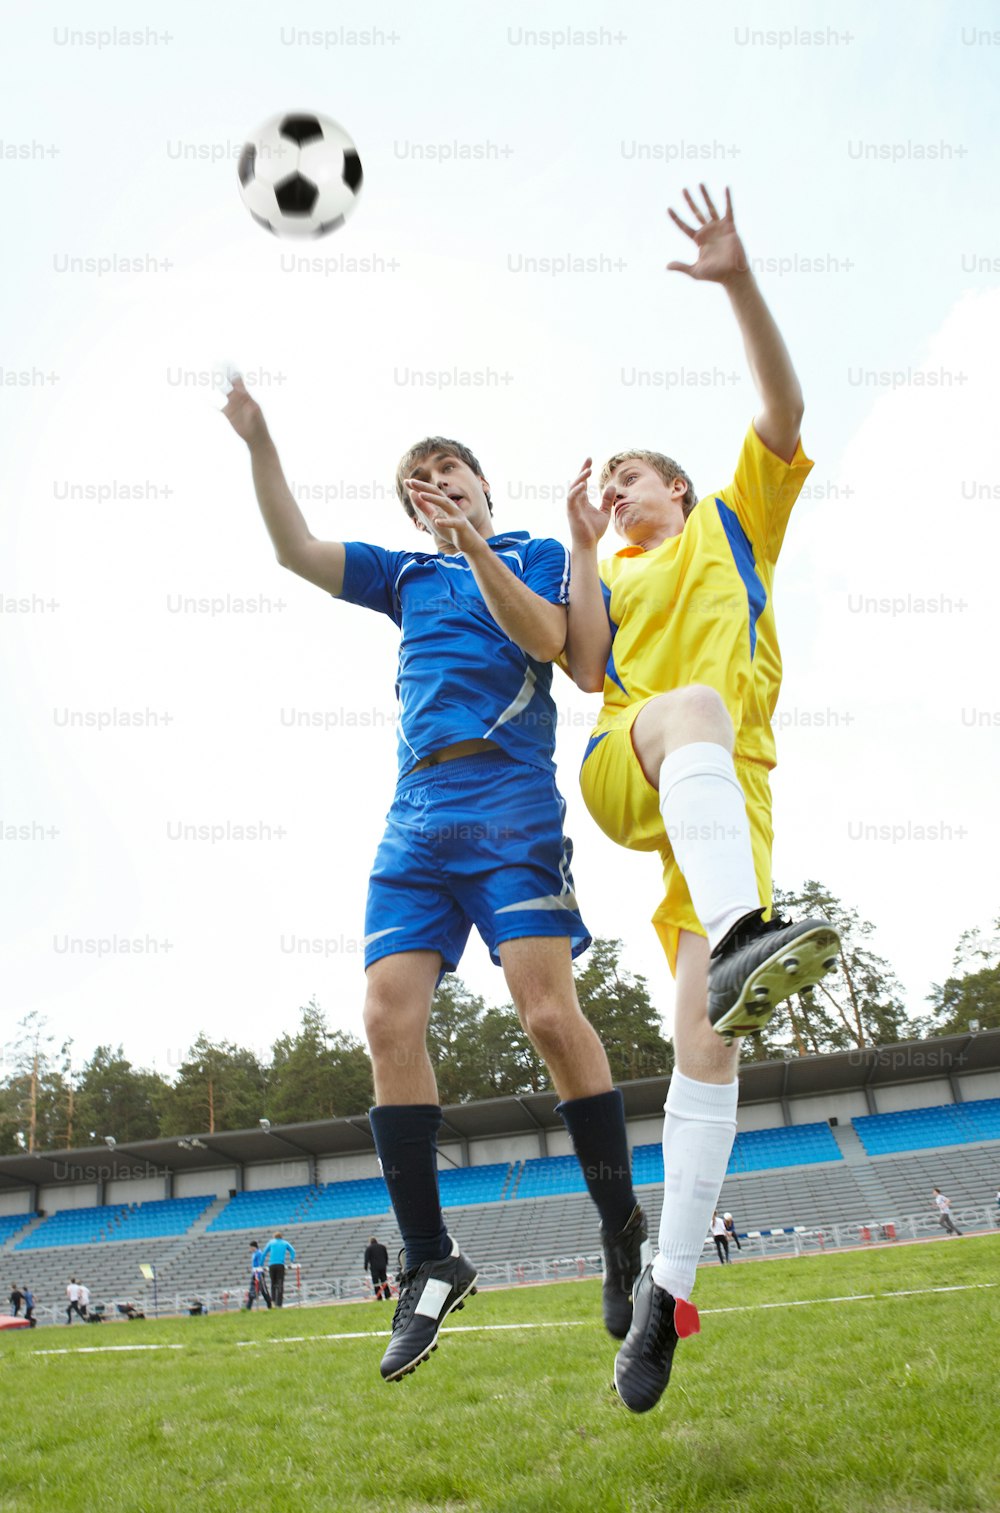 試合中に芝生のグラウンドでジャンプしてボールを見る2人のサッカー選手